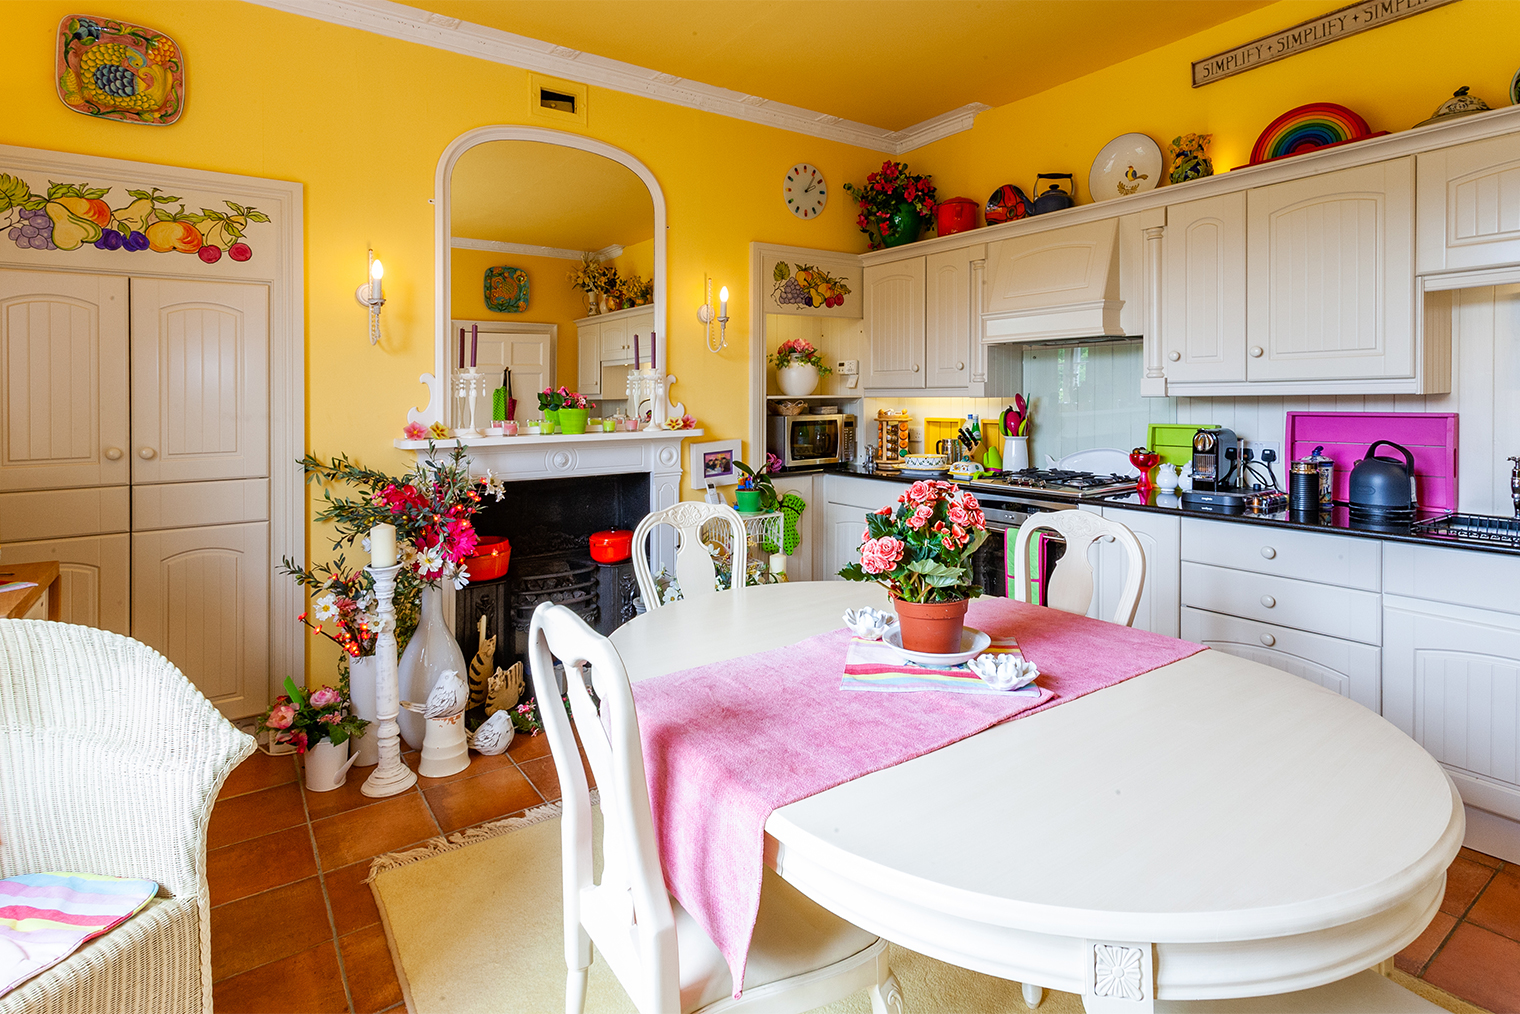 Множество ярких элементов утомляет: желтые стены, цветы, салатовые и розовые аксессуары у зеркала, на столешнице и дорожка на столе. Это перегружает внимание. Фотография: Ian Luck / Shutterstock